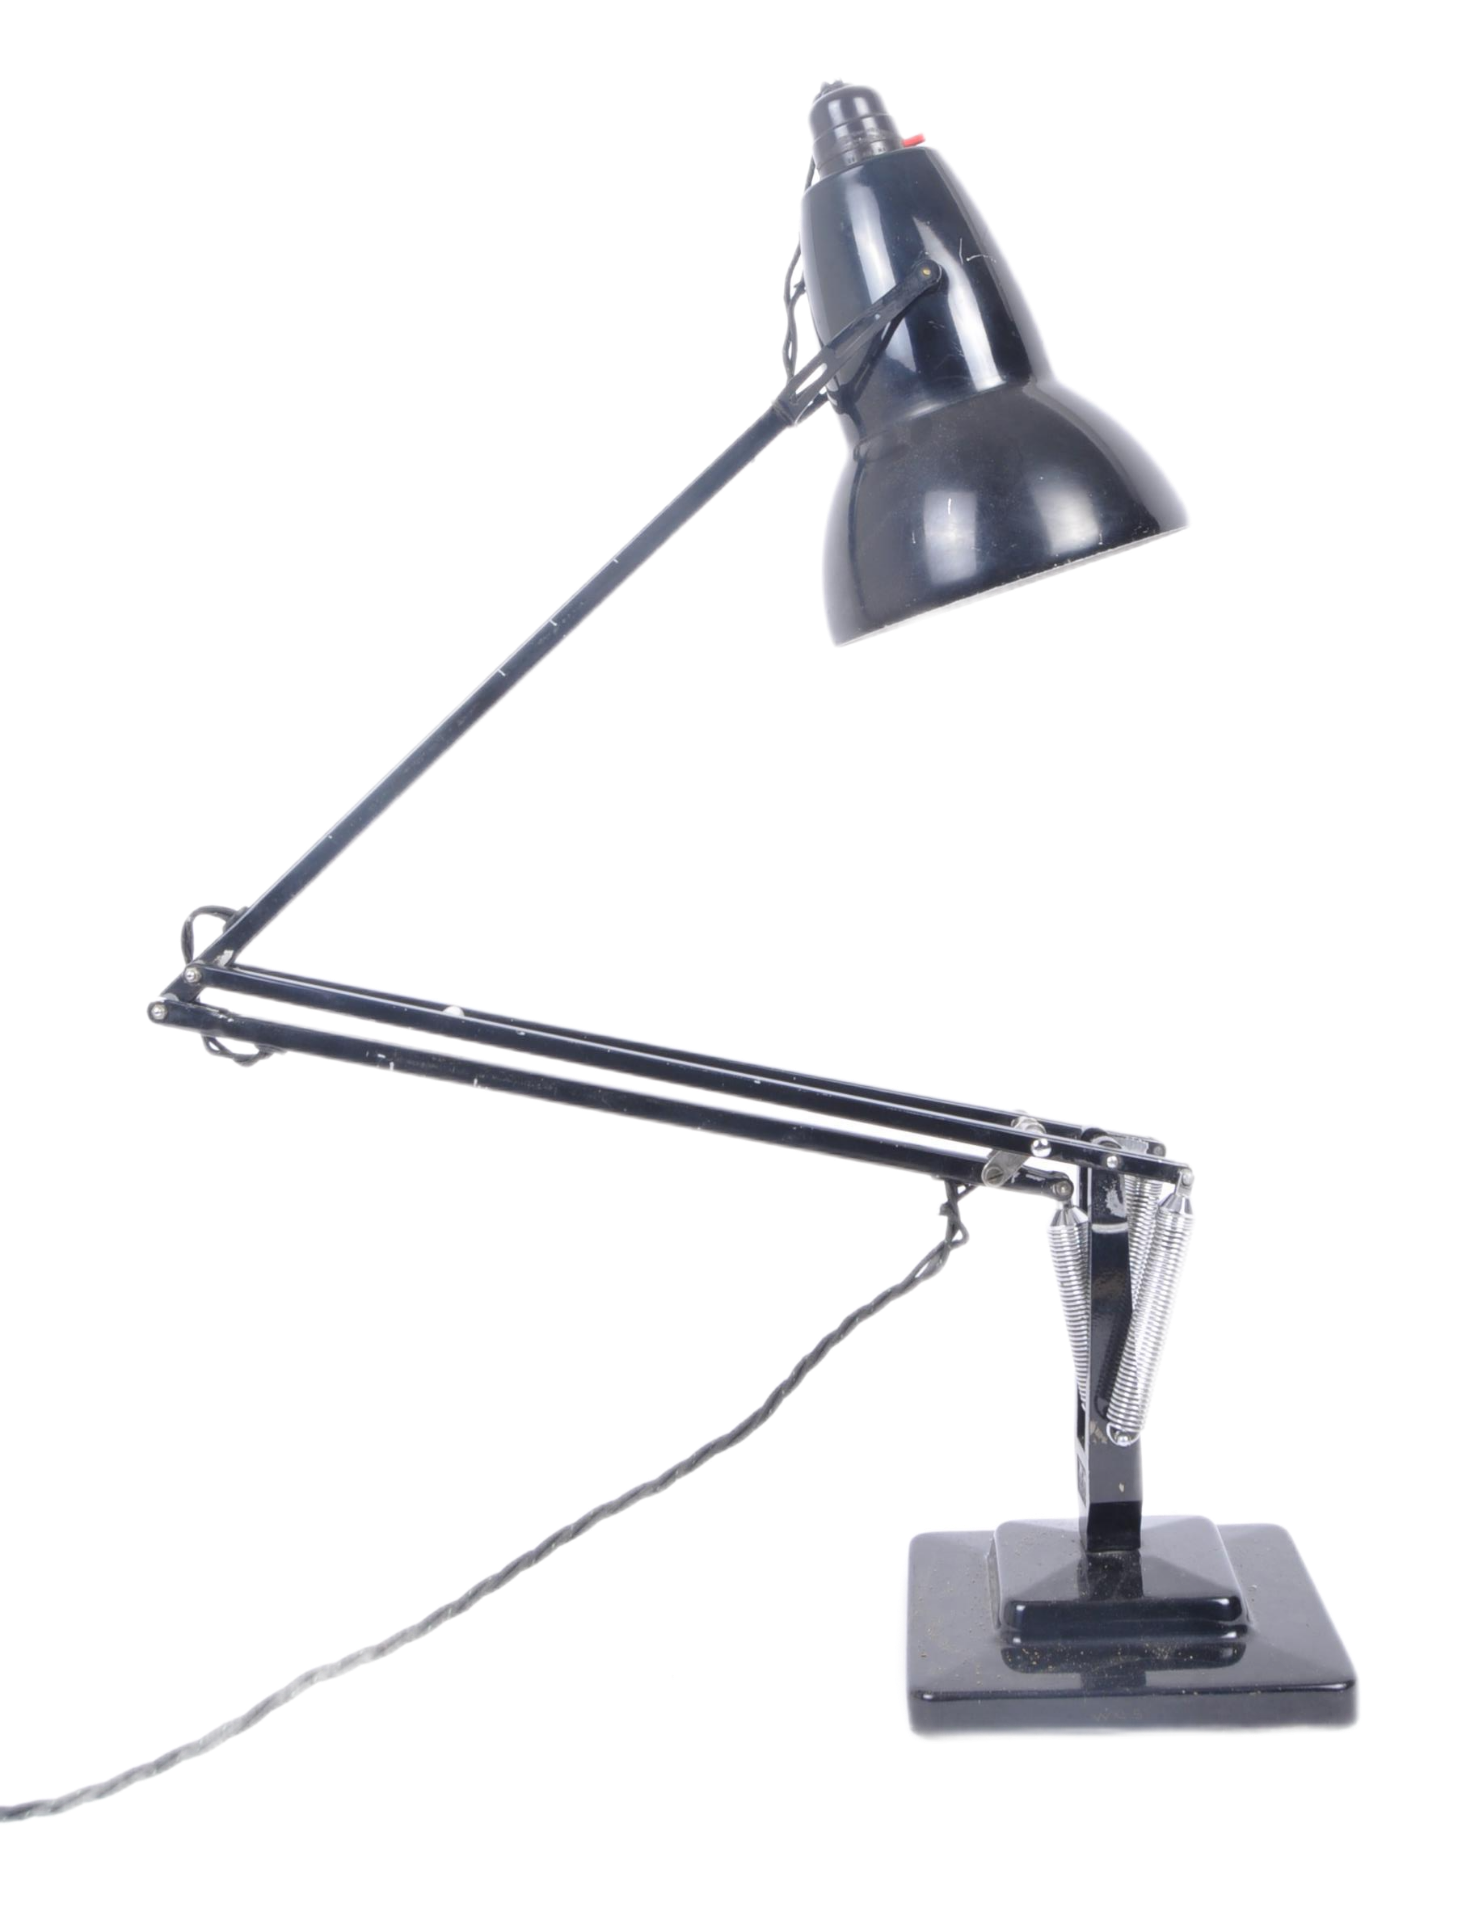 HERBERT TERRY - MIDCENTURY BLACK ANGLEPOISE DESK LAMP